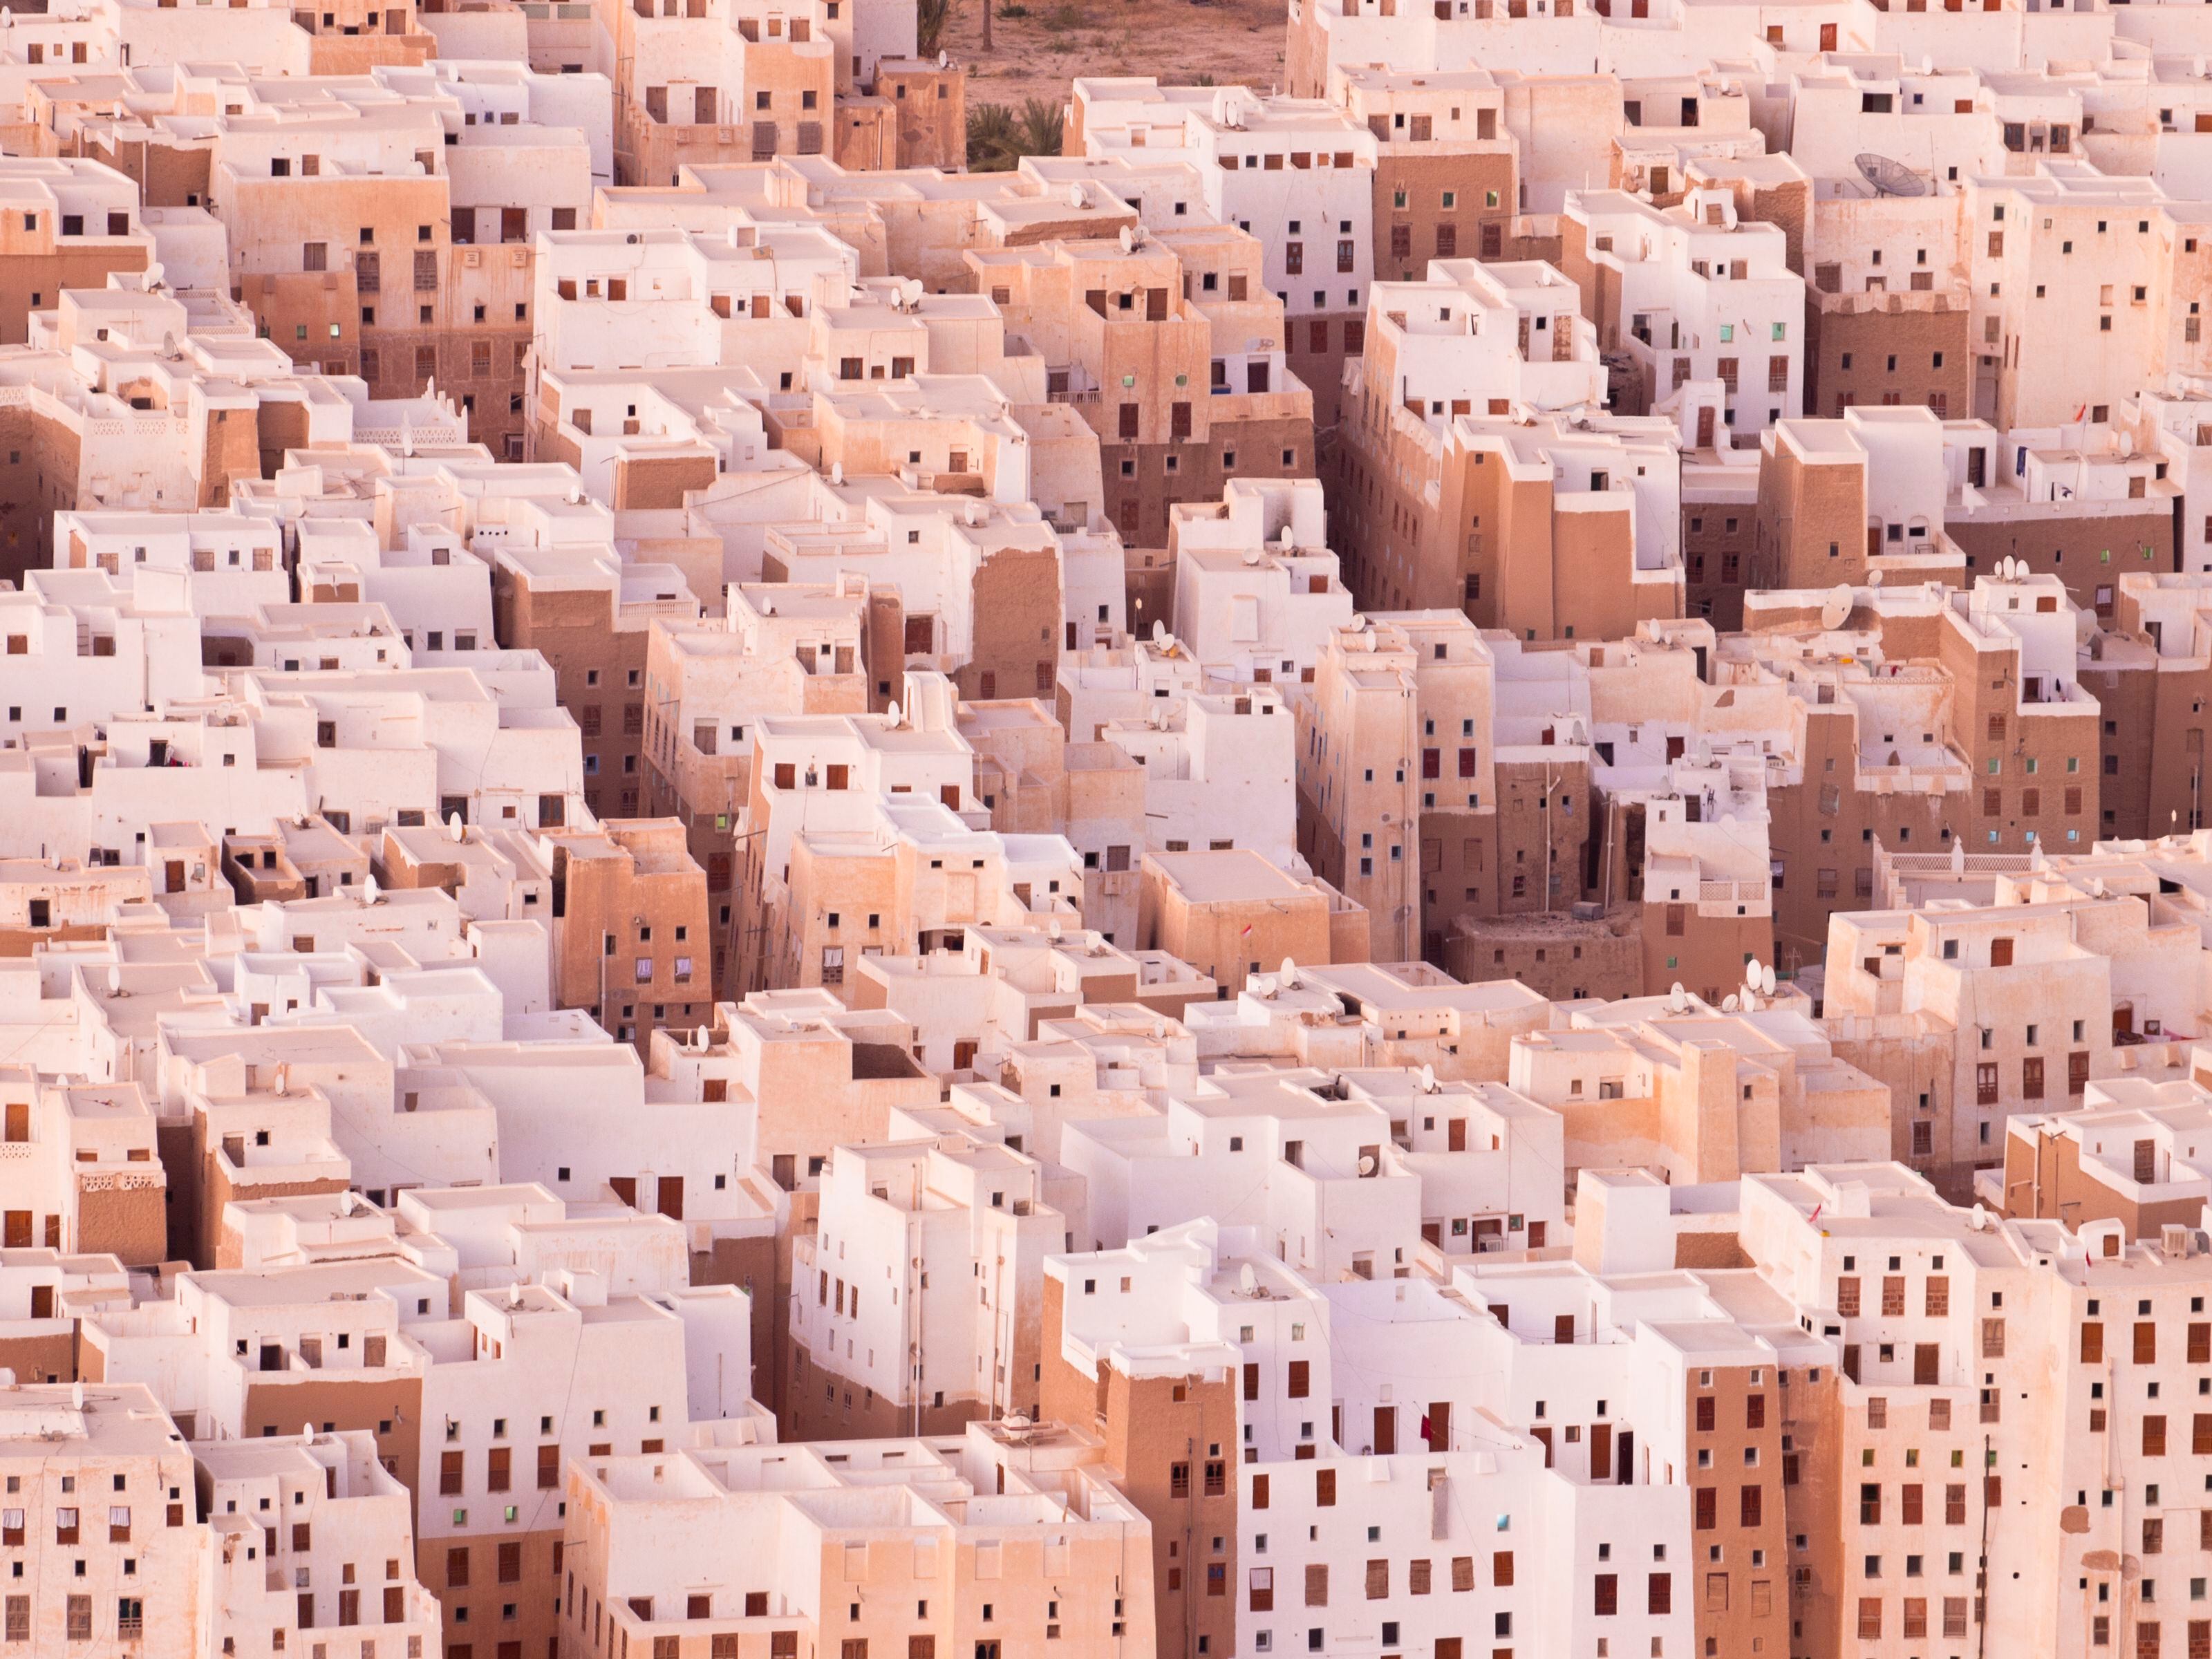 Vista aérea de la ciudad de Shibam, conocida como la Manhattan de Arabia.